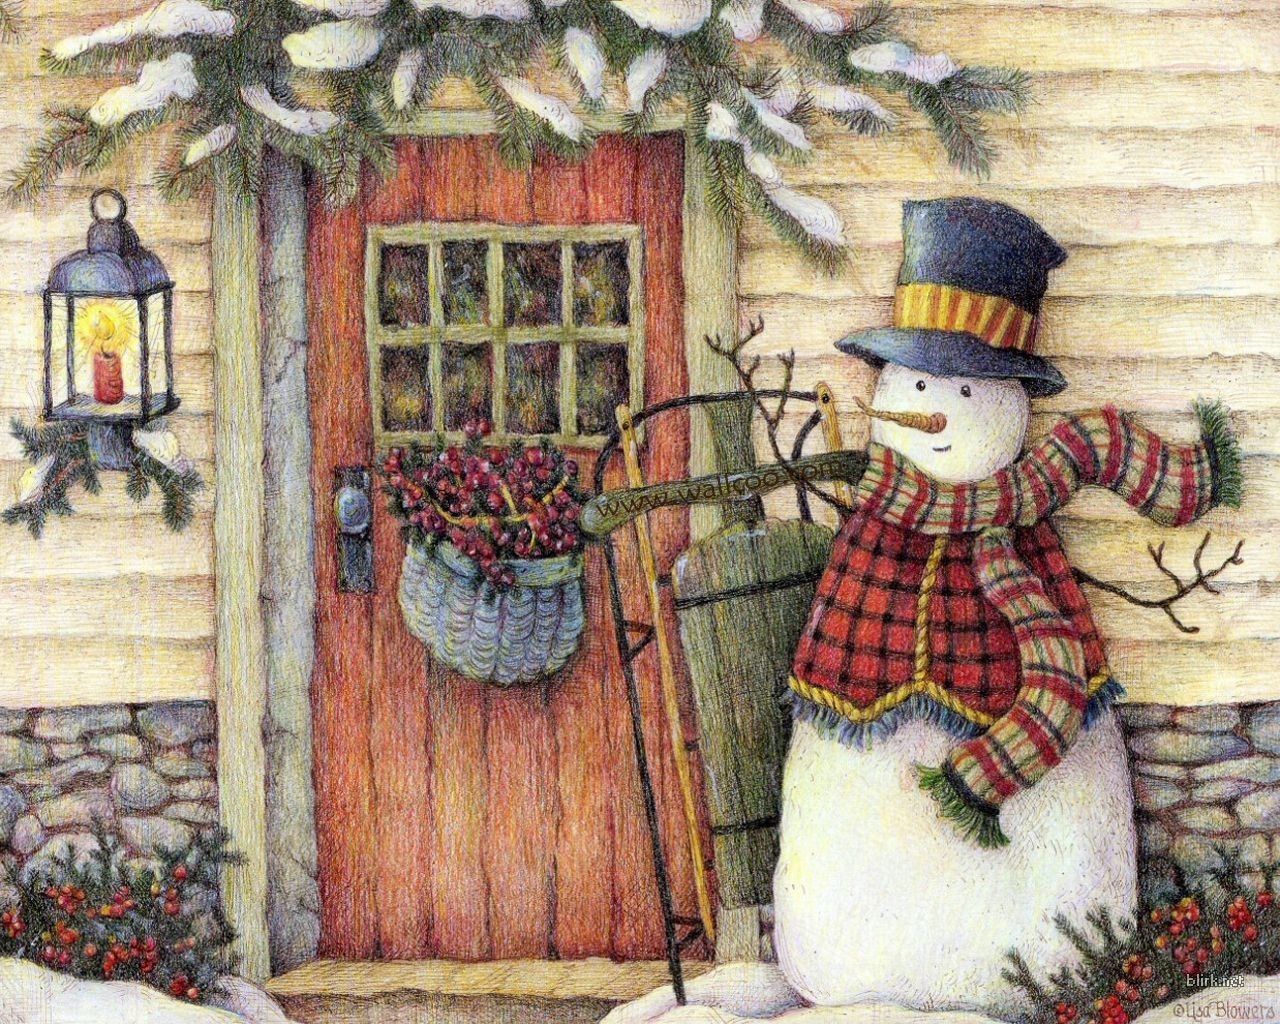 13542 Заставки и Обои Снеговики на телефон. Скачать новый год (new year), рождество (christmas xmas), рисунки картинки бесплатно